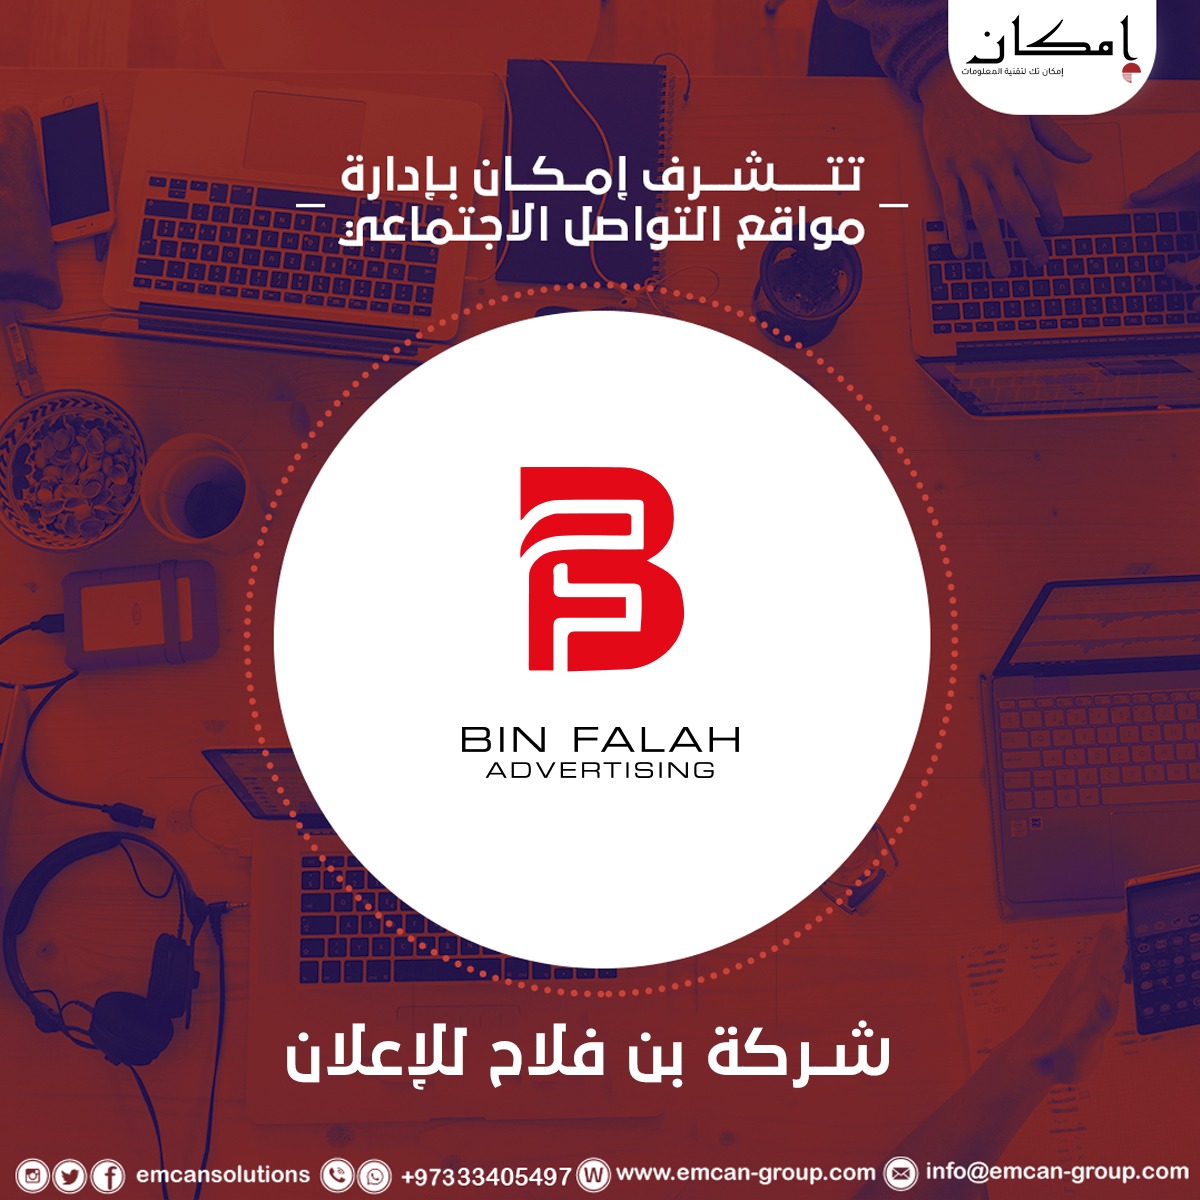 Social media management for Bin Falah Advertising Company